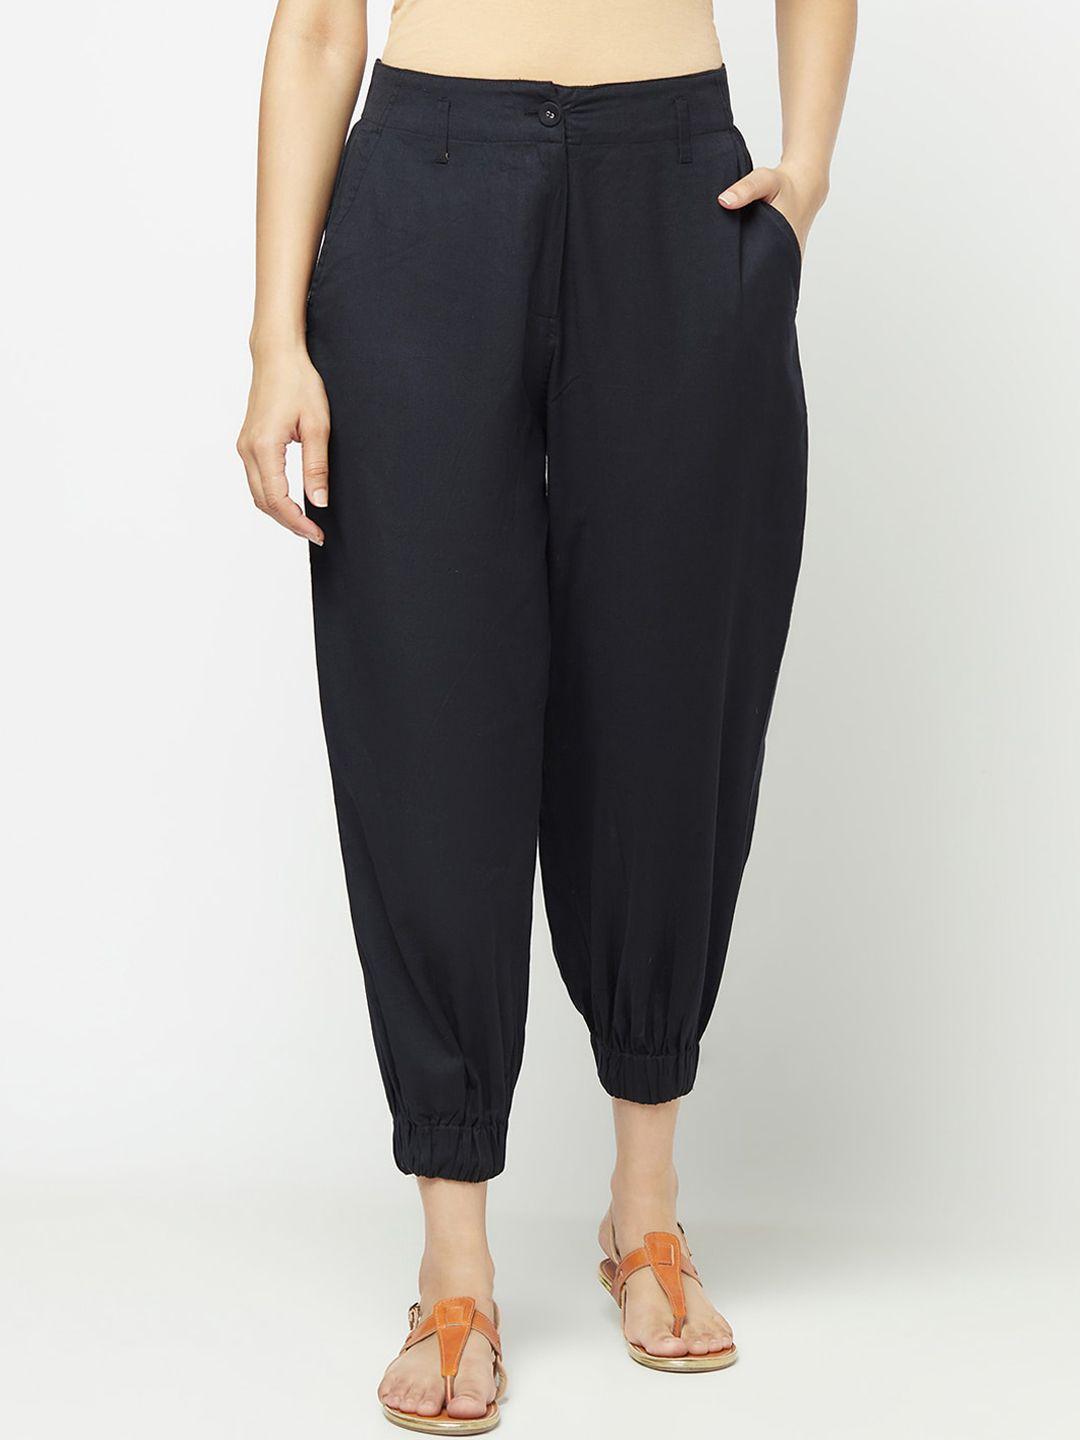 fabindia-women-black-cotton-trousers